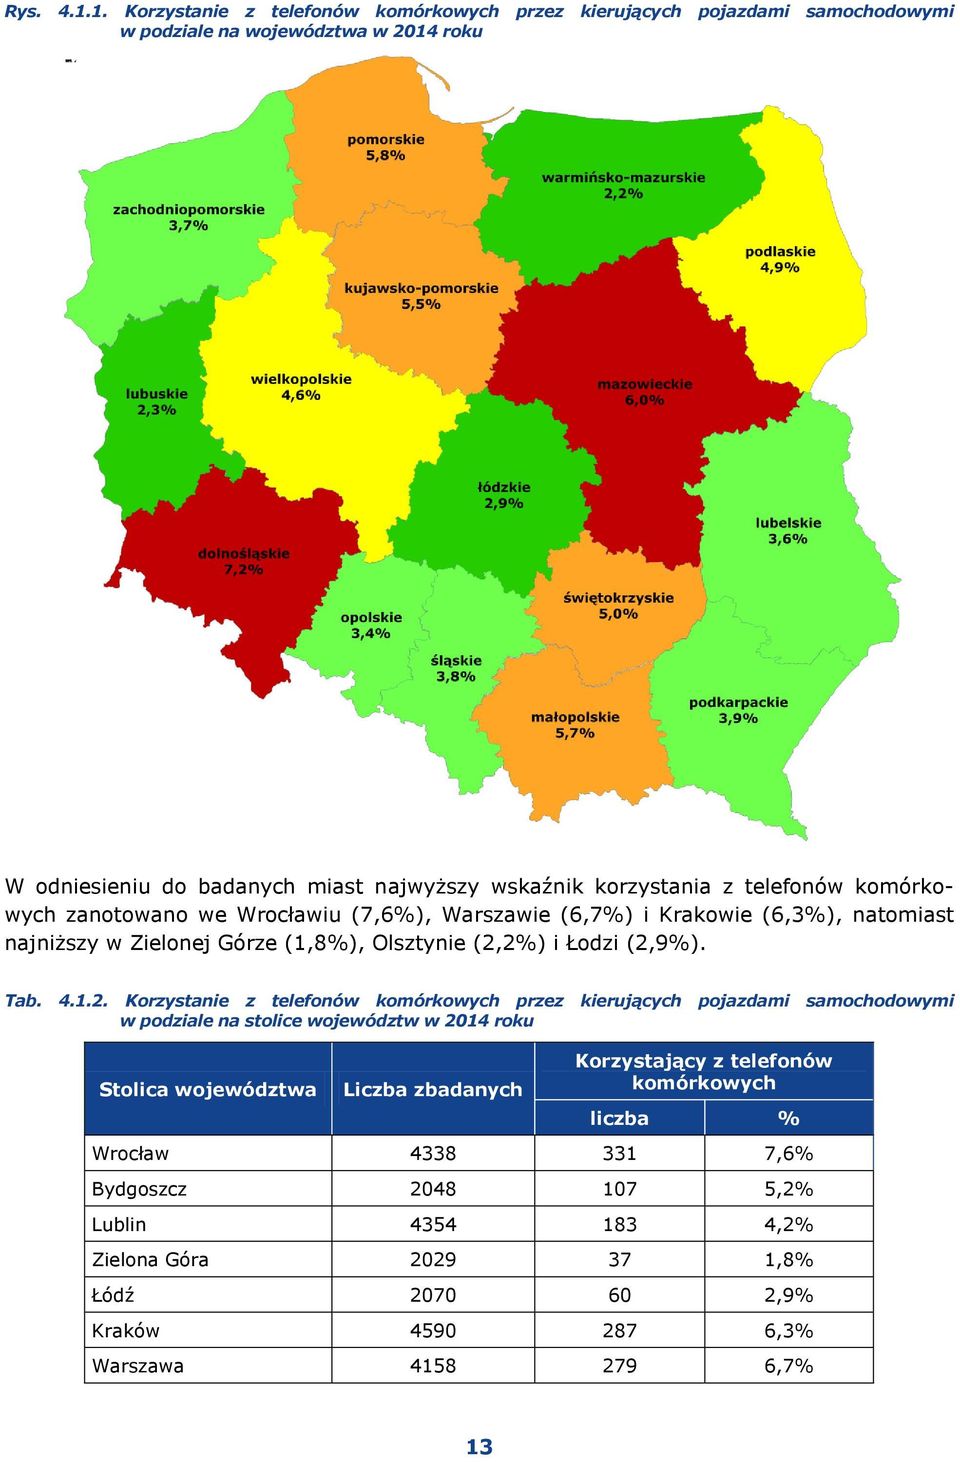 telefonów komórkowych zanotowano we Wrocławiu (7,6%), Warszawie (6,7%) i Krakowie (6,3%), natomiast najniższy w Zielonej Górze (1,8%), Olsztynie (2,